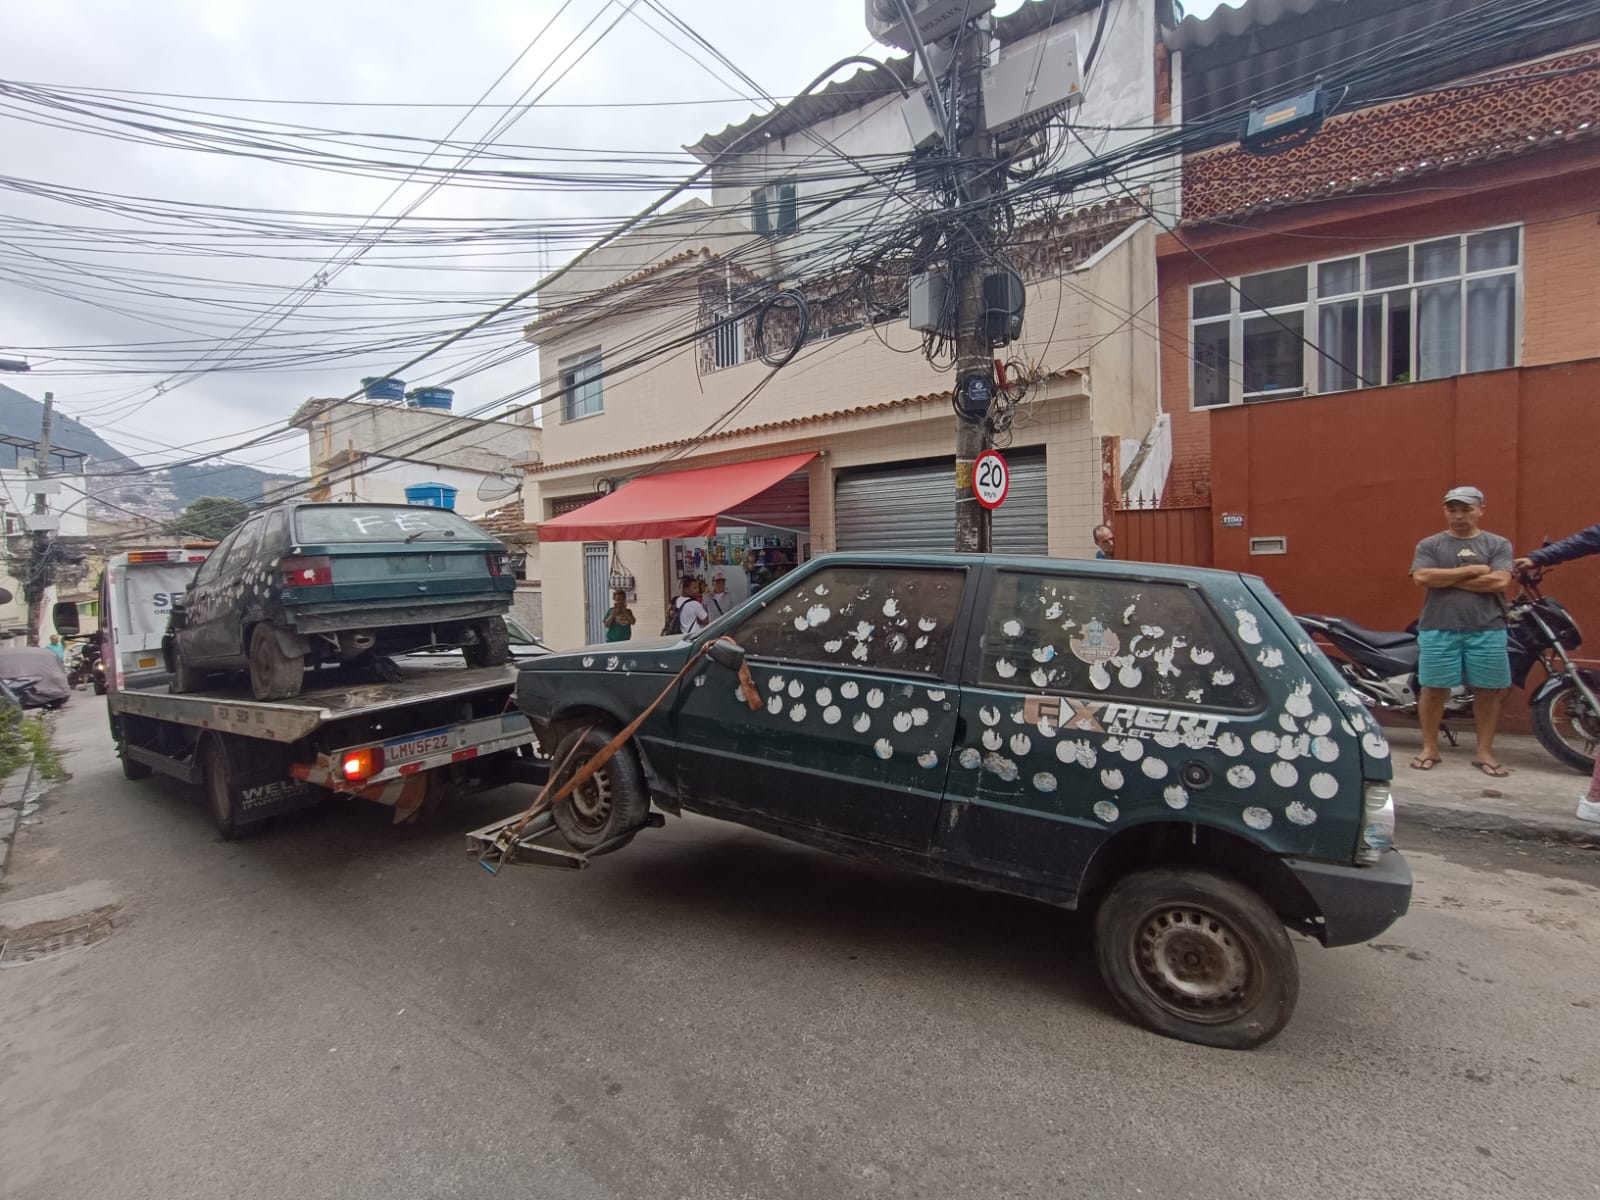 Ordenamento na Ladeira dos Tabajaras e Cabritos remove veículos abandonados e notifica comércio irregular (Foto: Divulgação)